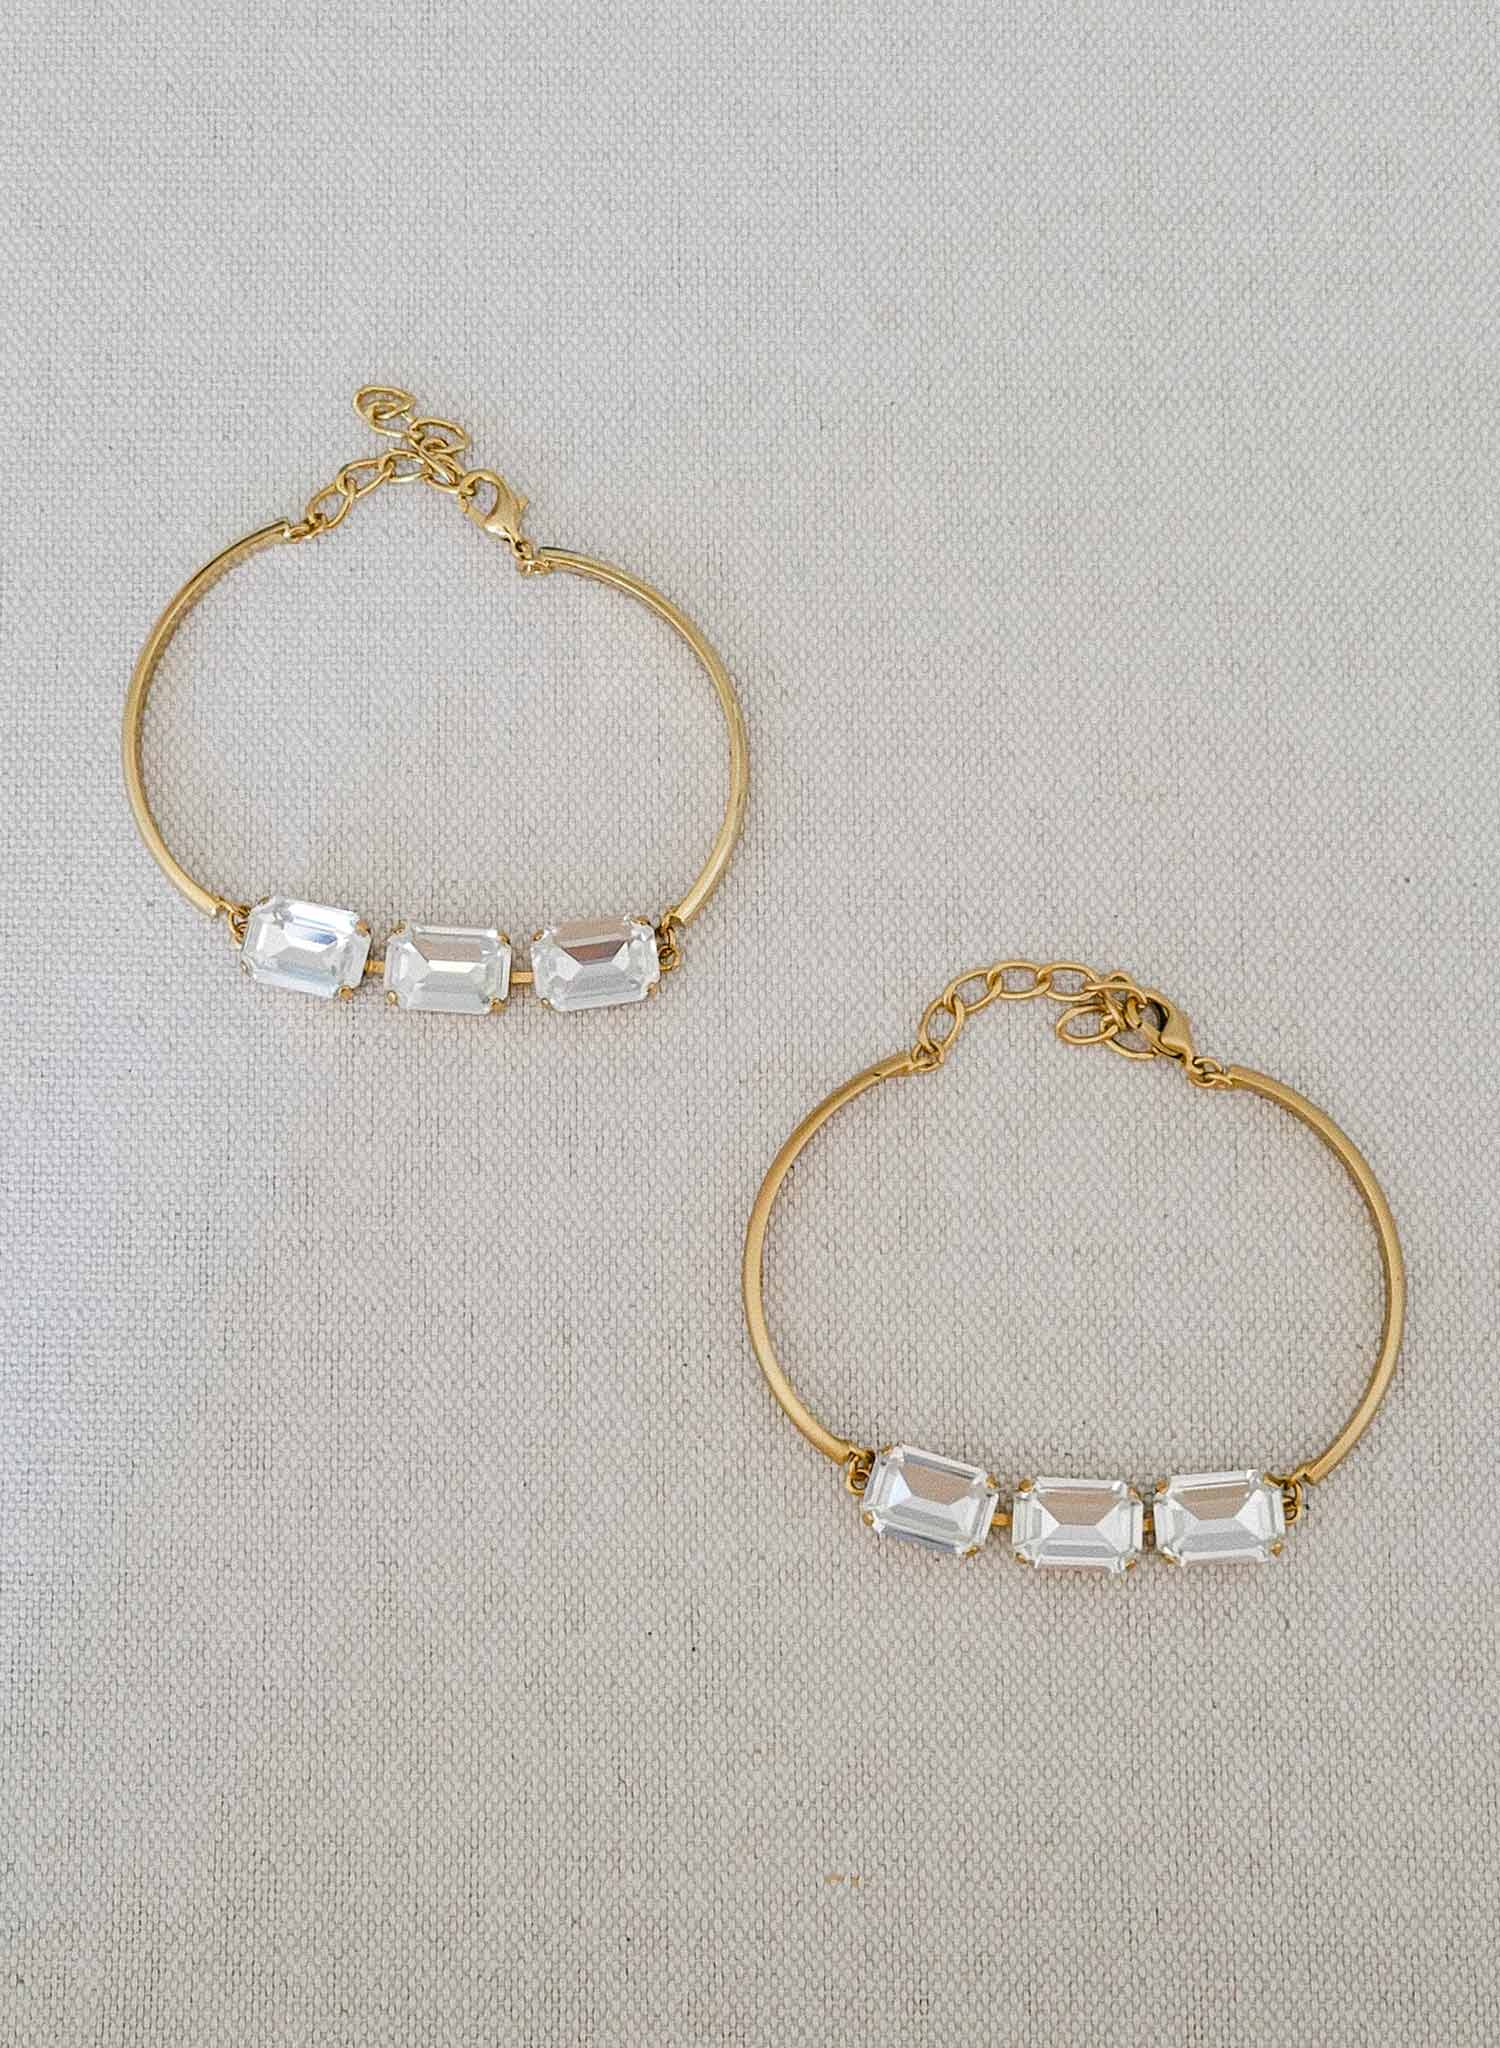 Octagon crystal bridal bracelet - Style #2380